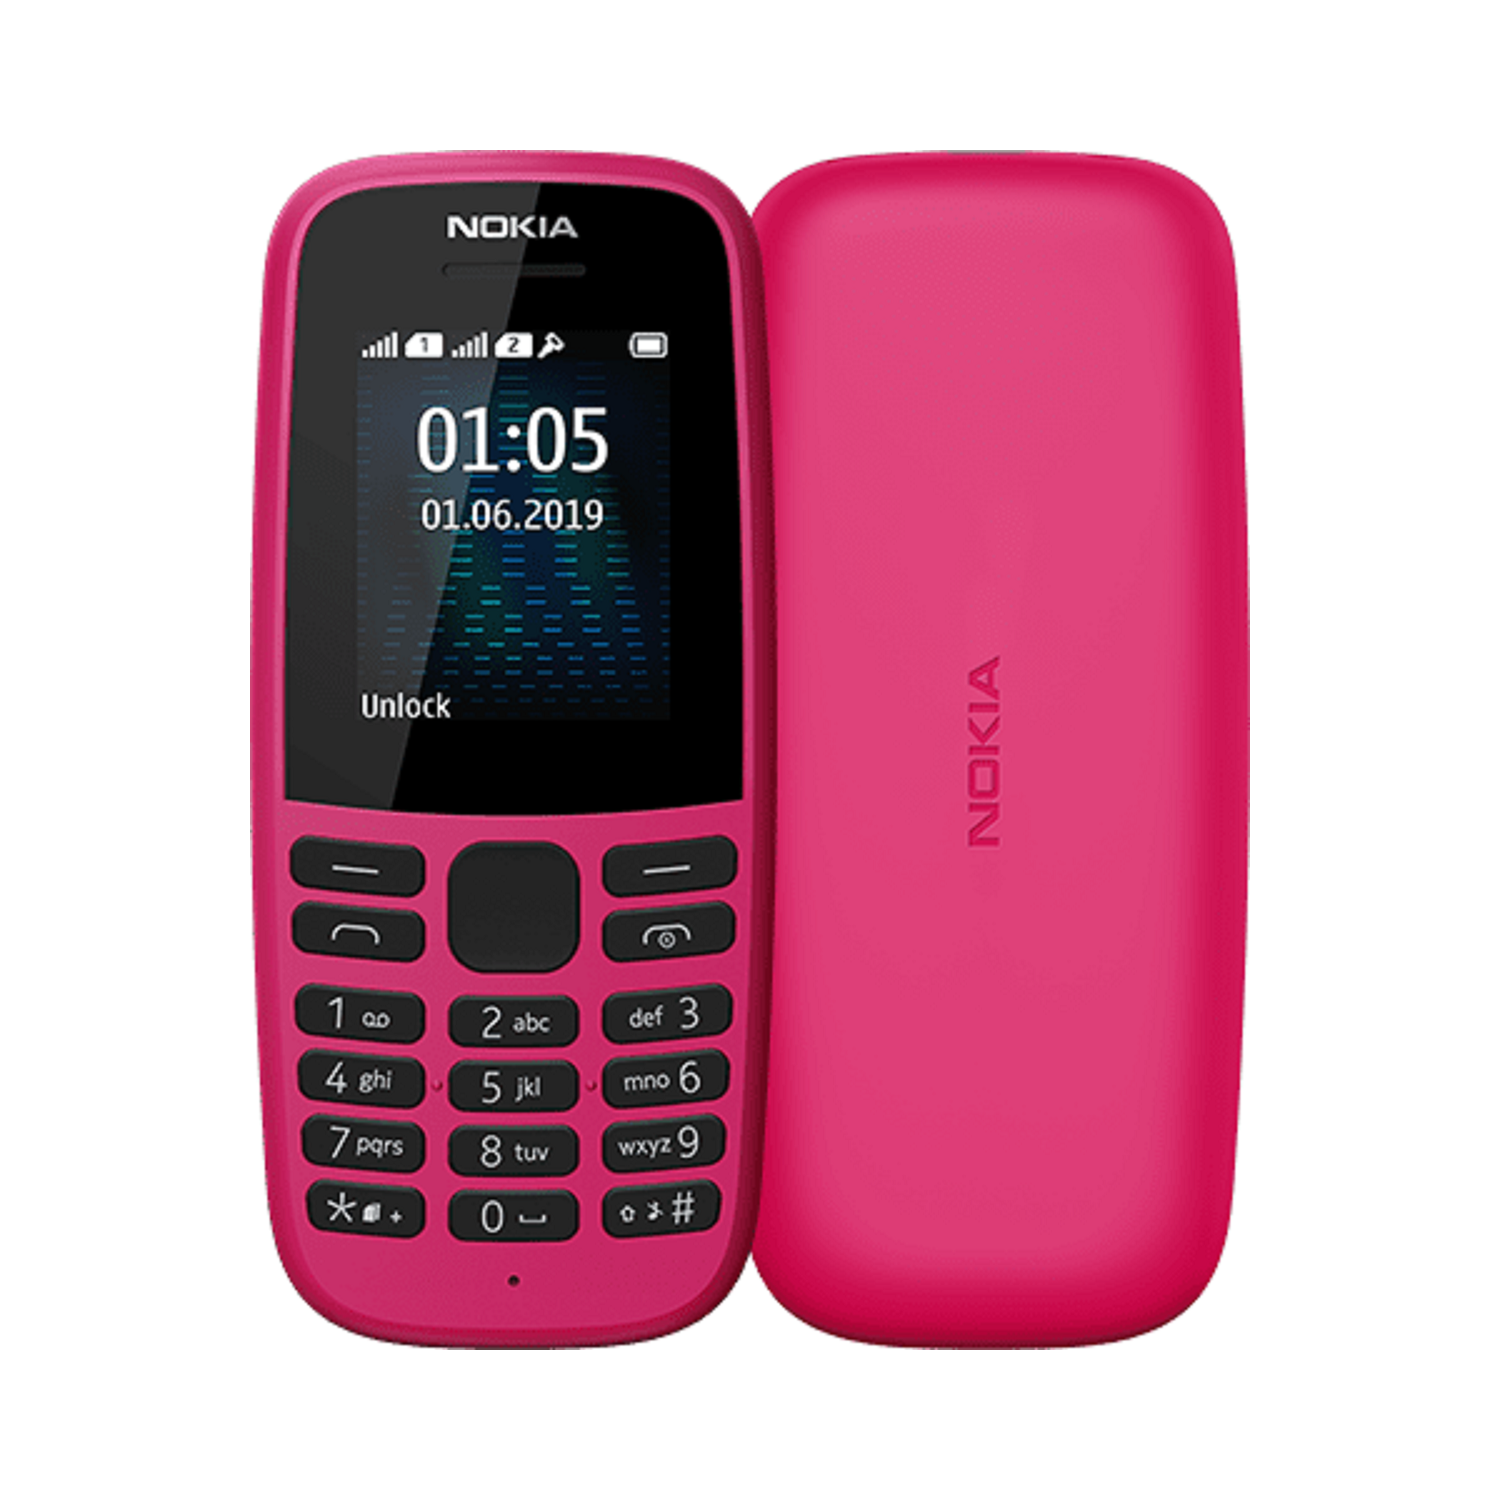 Nokia 105 2019 Pink 1.77 4MB 2G Unlocked & SIM Free